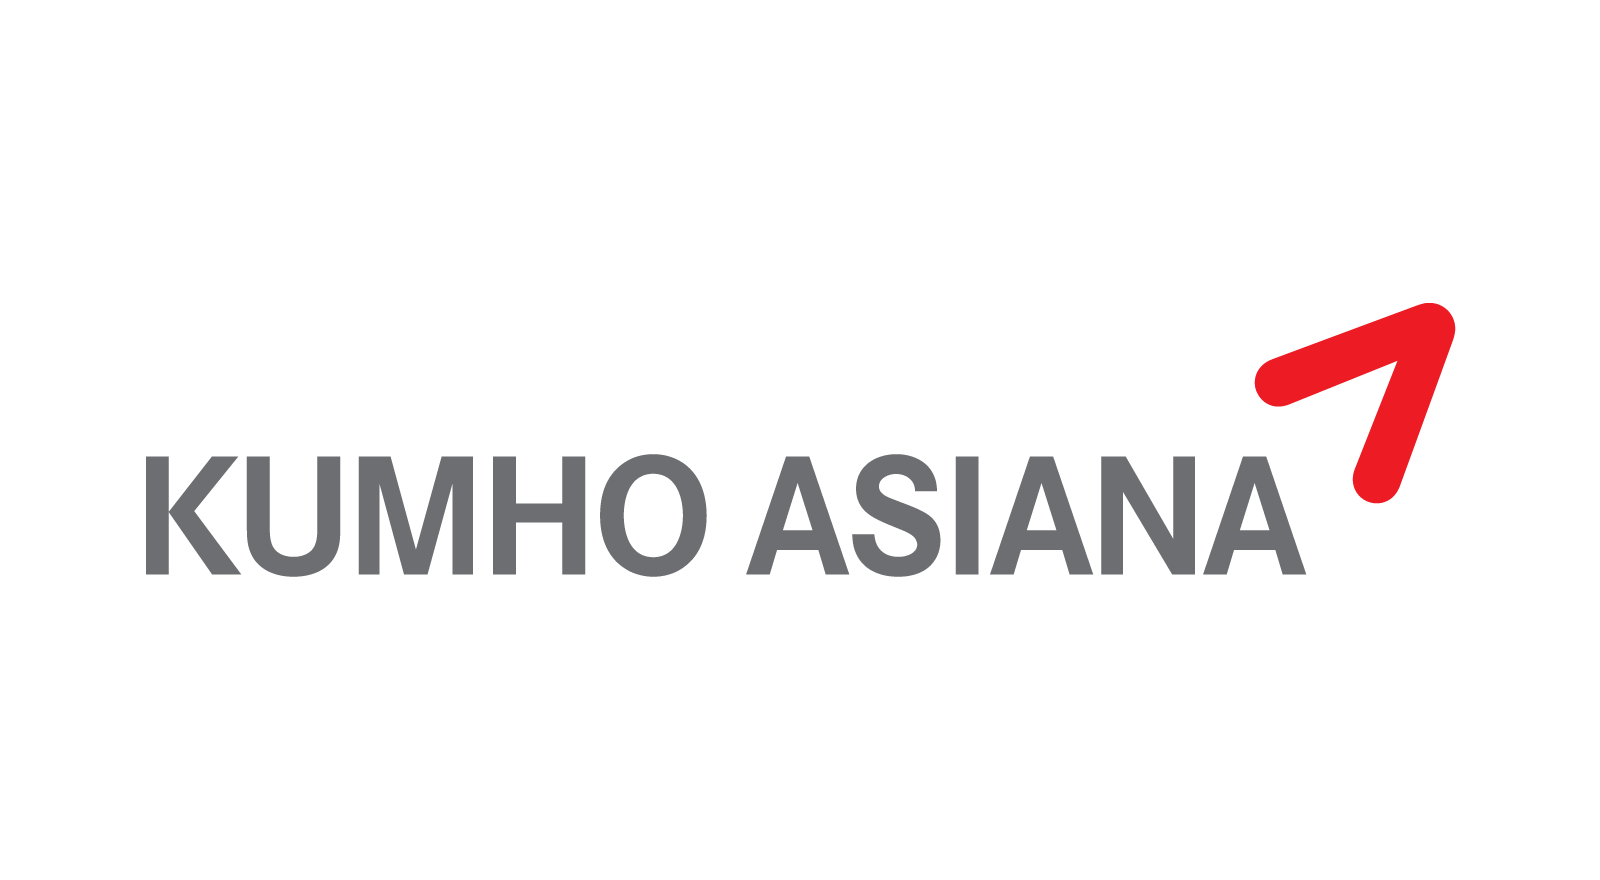 Asiana Logo - Kumho Asiana logo